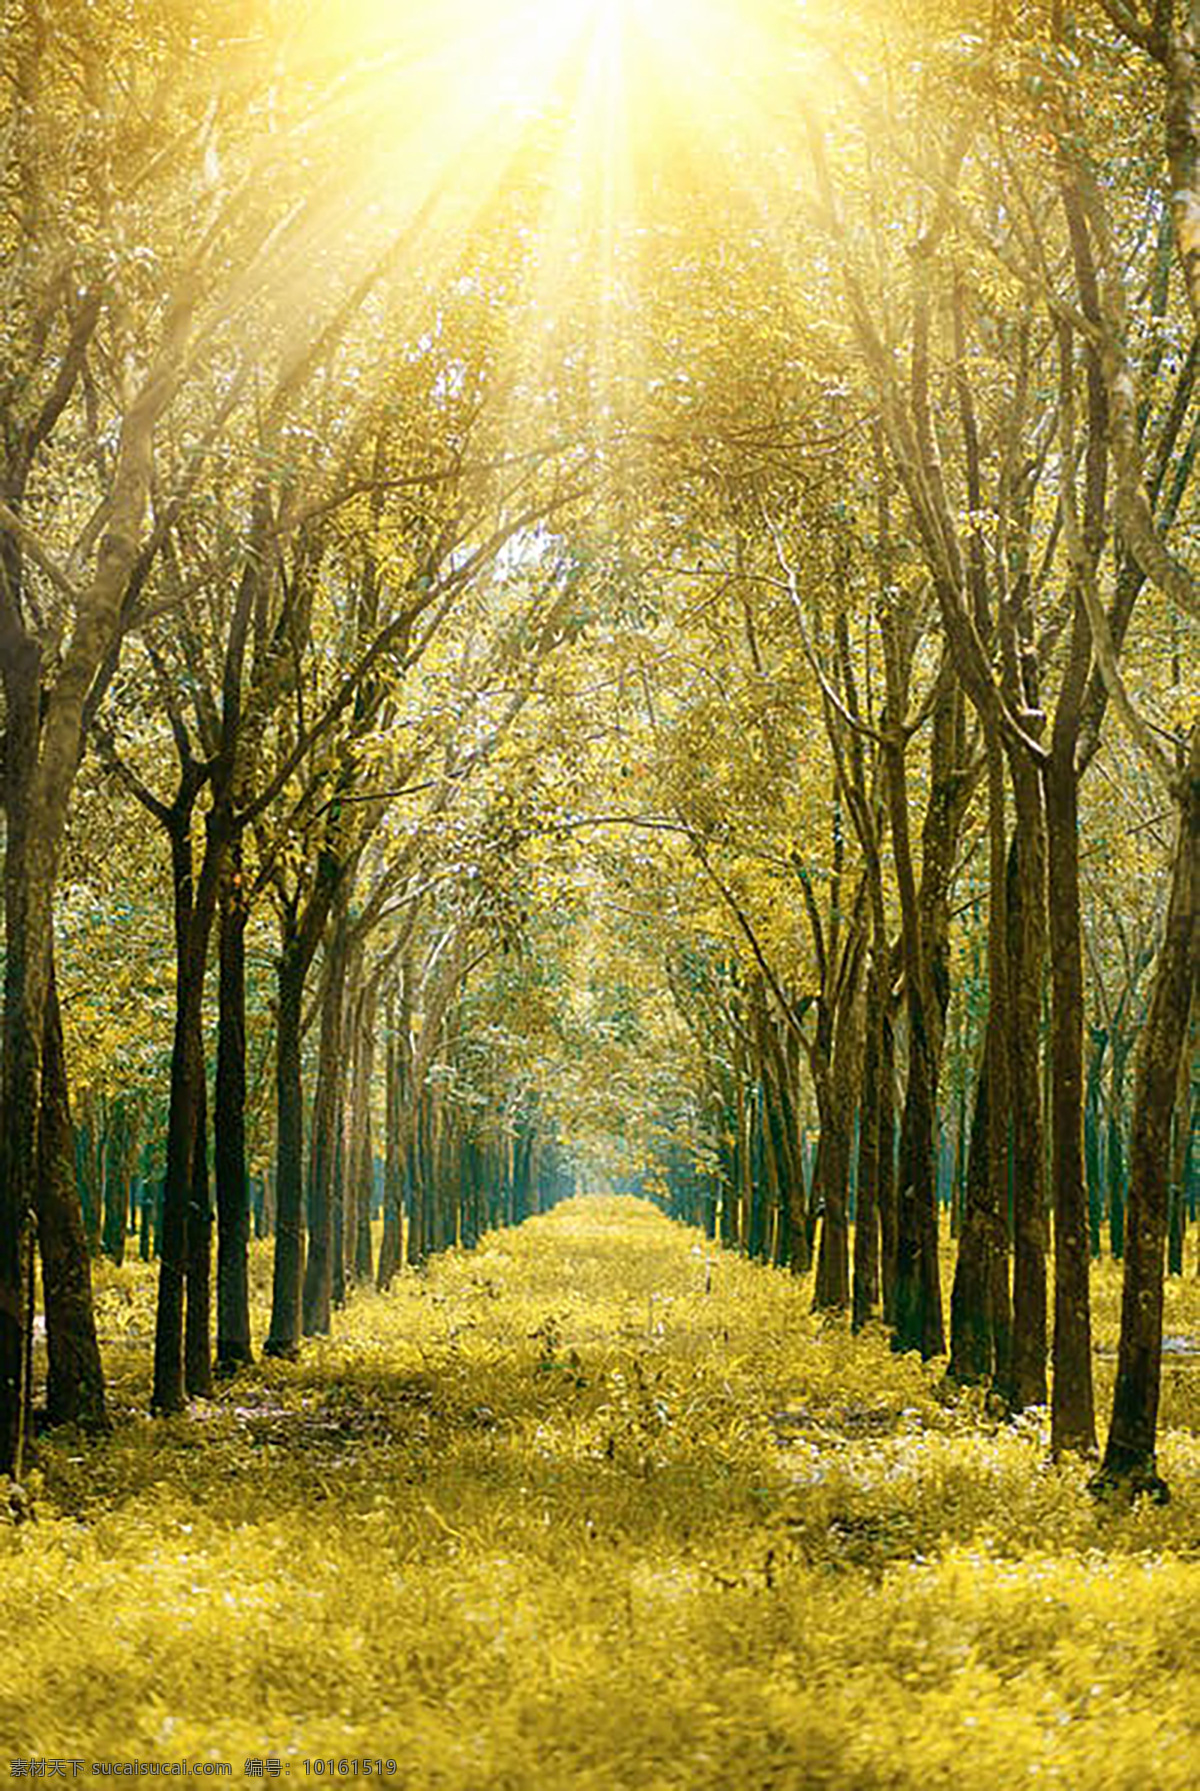 森林之路 树木 旅游 拍照 背景 路 大自然 落叶 季节 阳光 金色 自然景观 自然风景